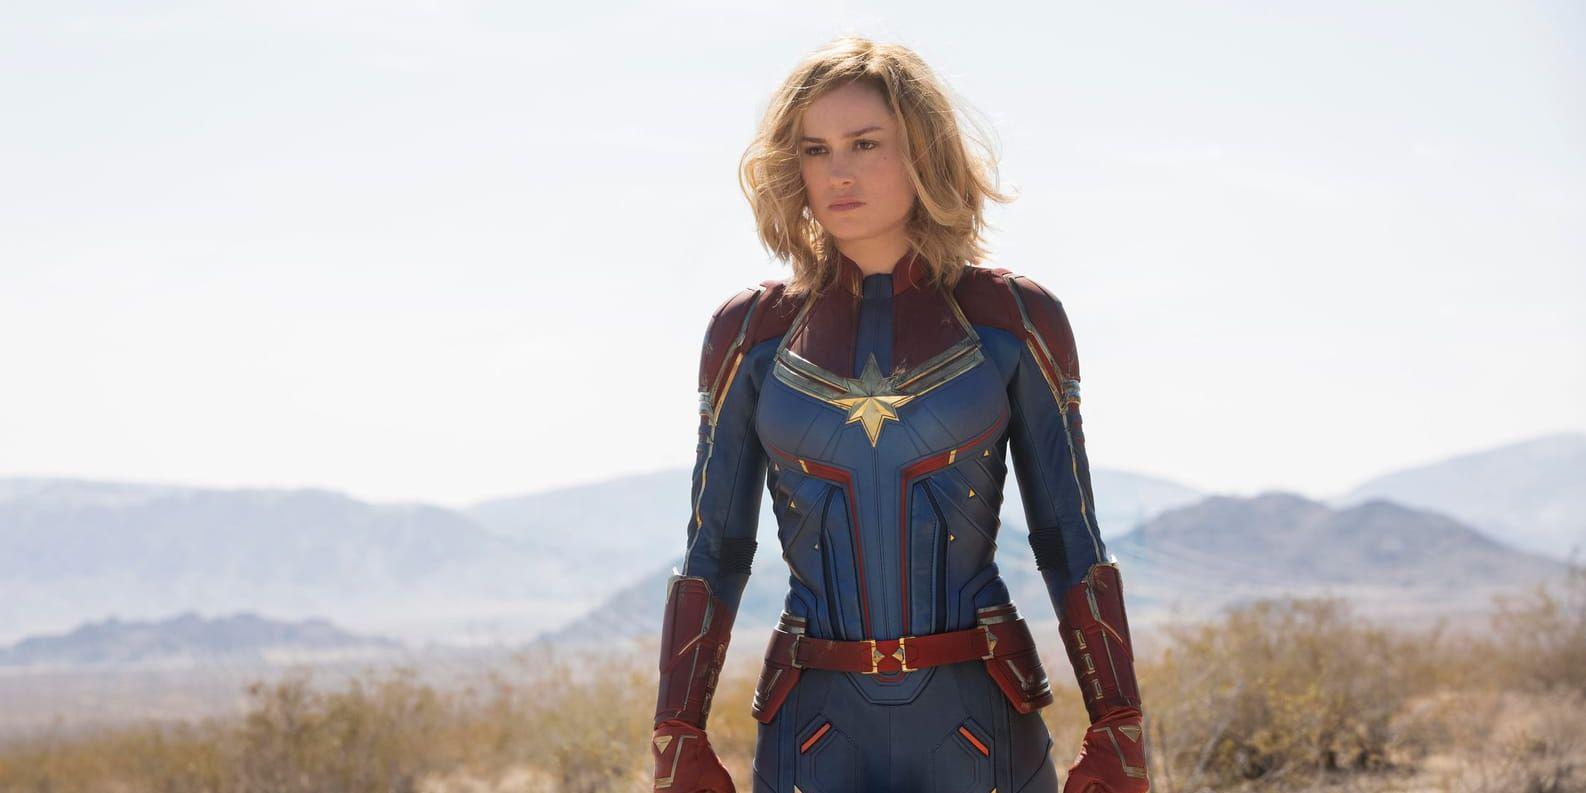 Brie Larson spelar huvudrollen som Captain Marvel i filmen med samma namn. Pressbild.